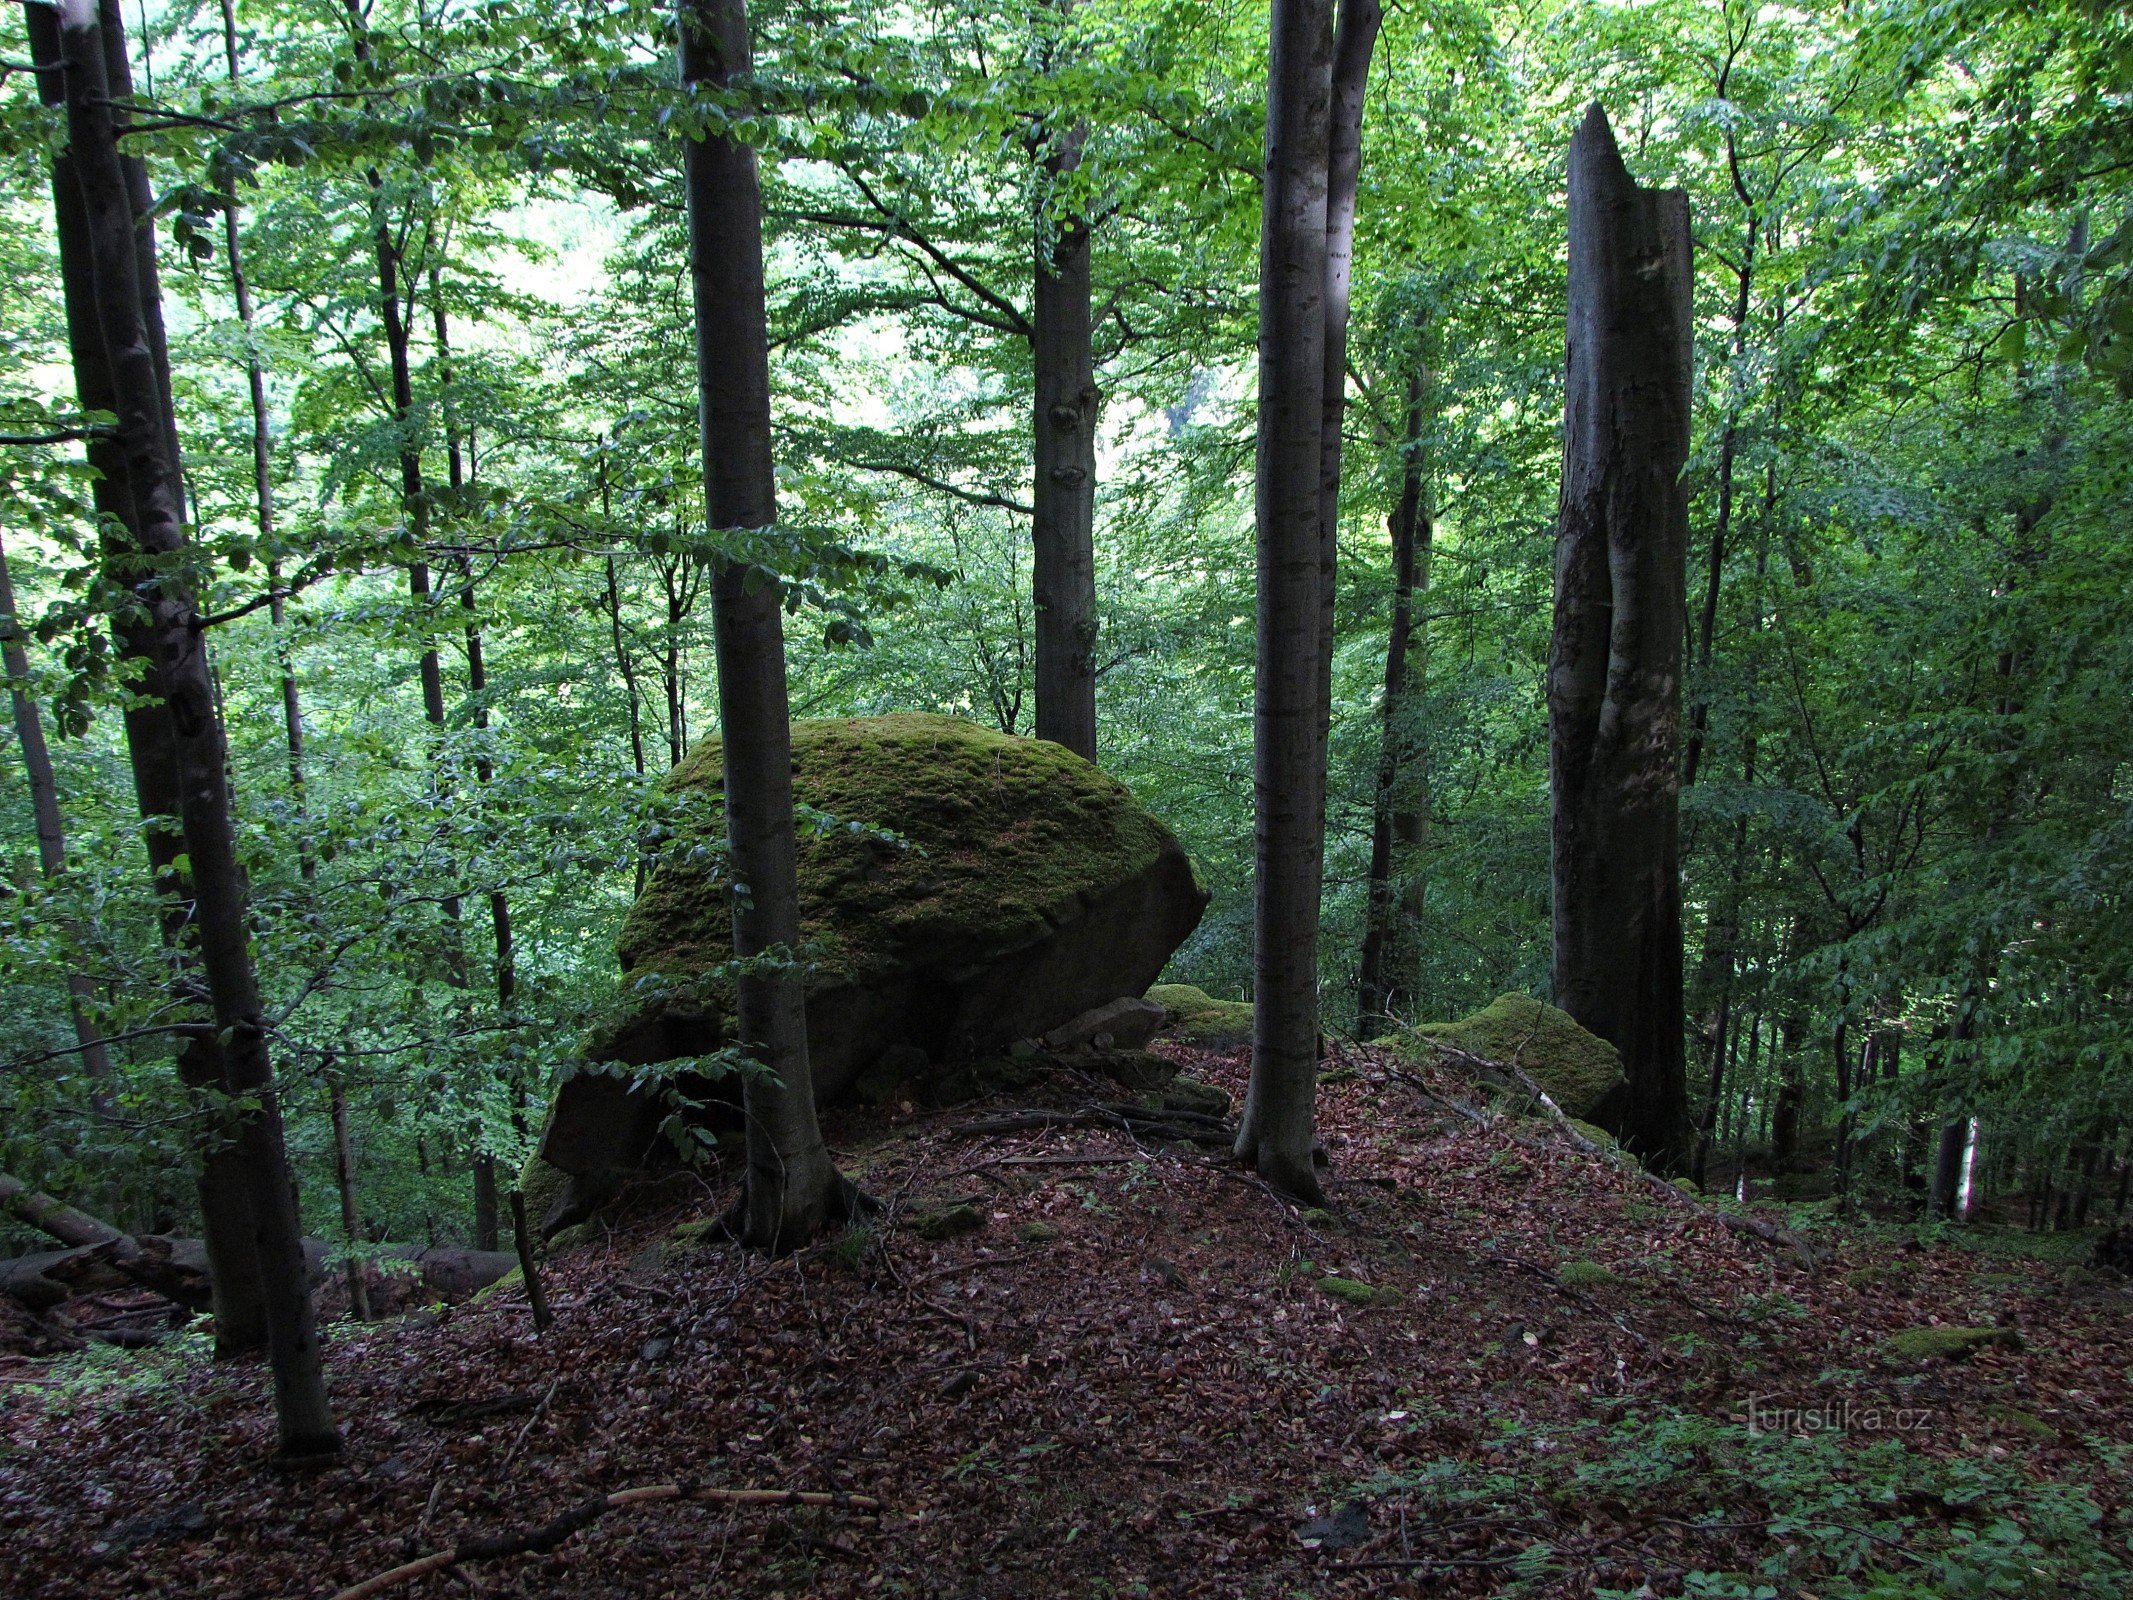 Bludný kamenje in njegov gozd